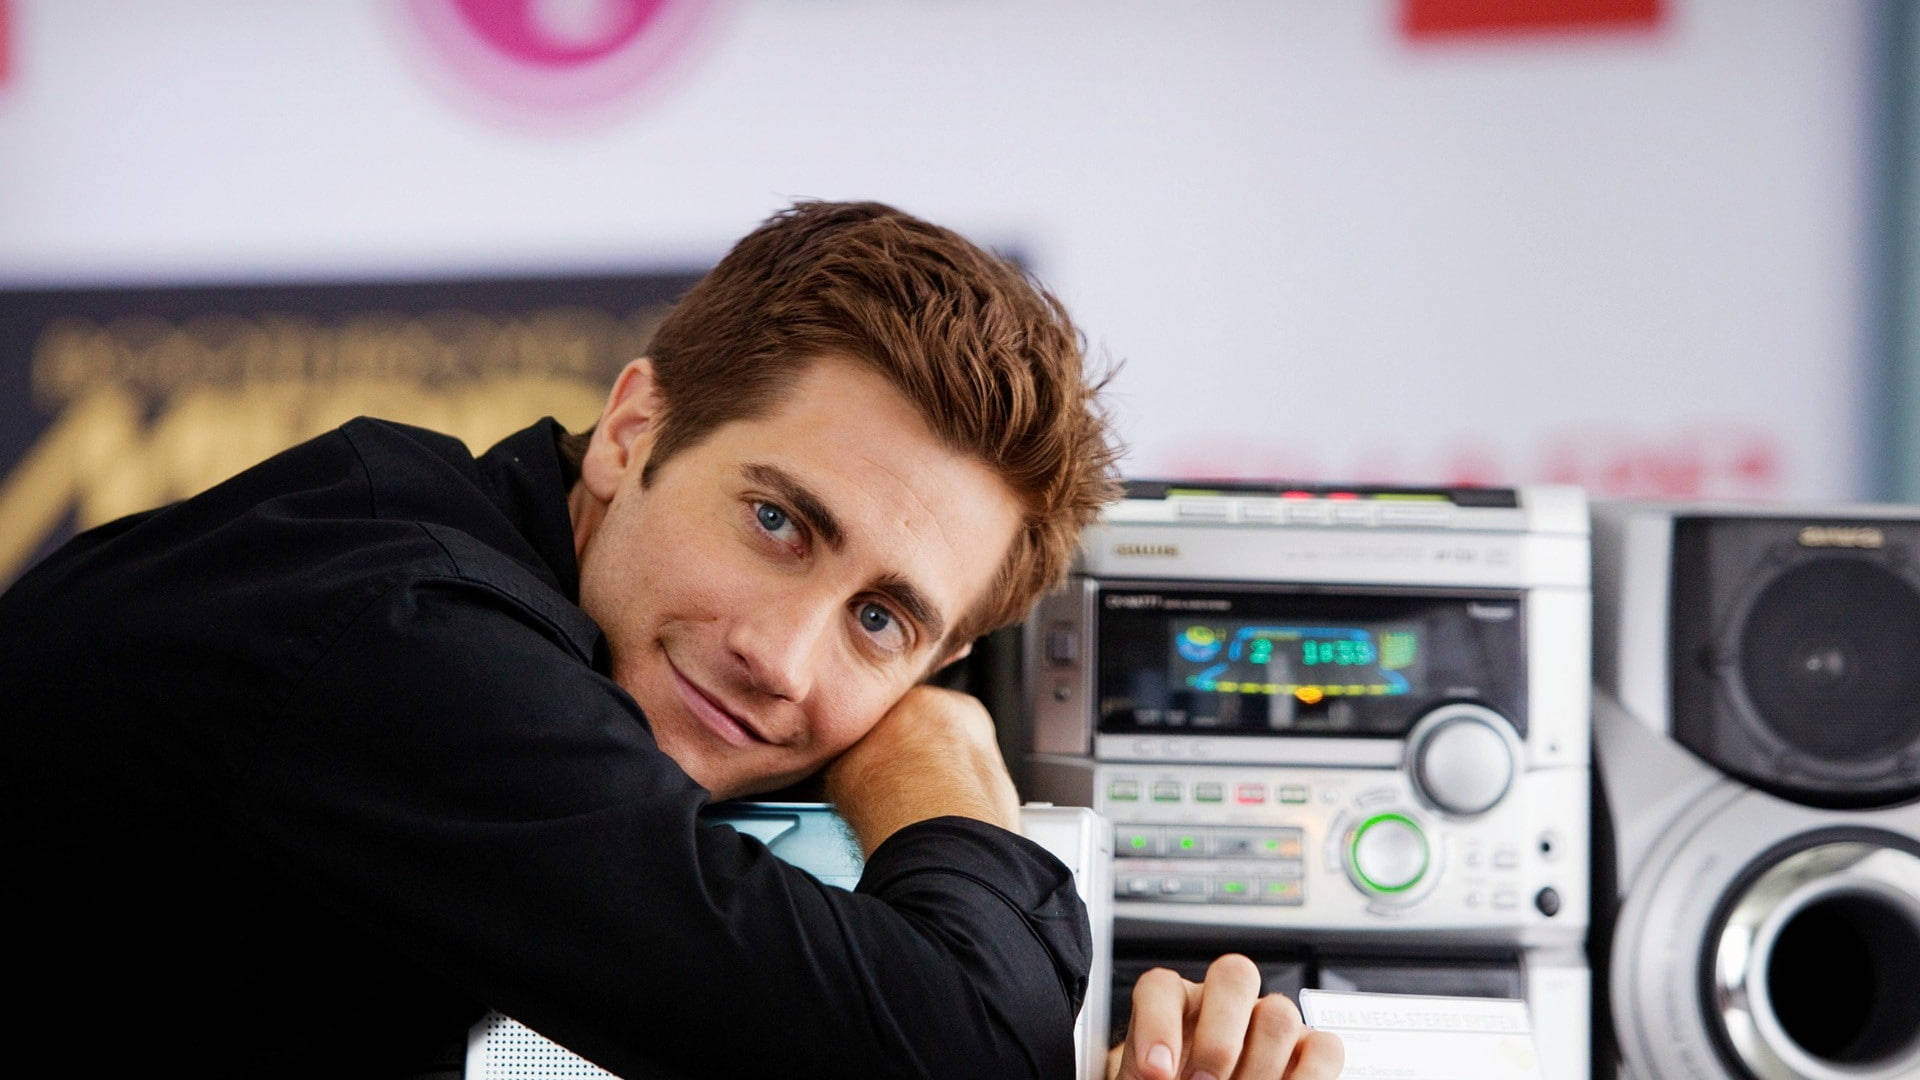 Adorable Jake Gyllenhaal Background